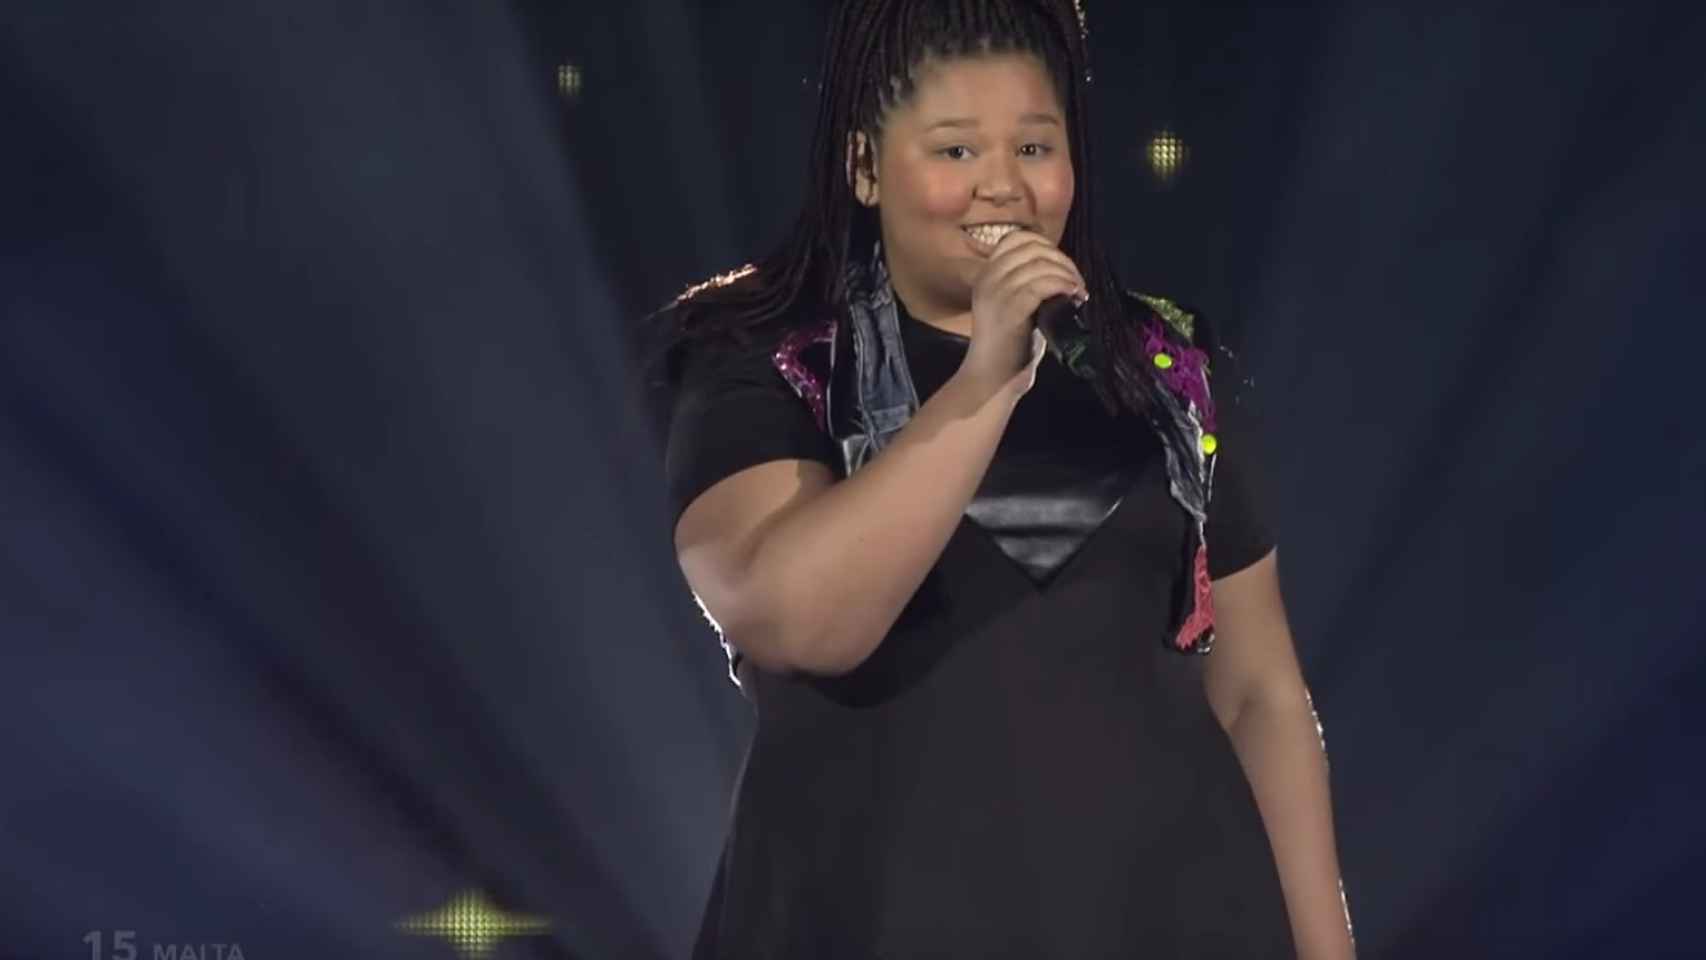 Malta gana el Festival de Eurovisión Junior 2015 con el tema 'Not my soul'